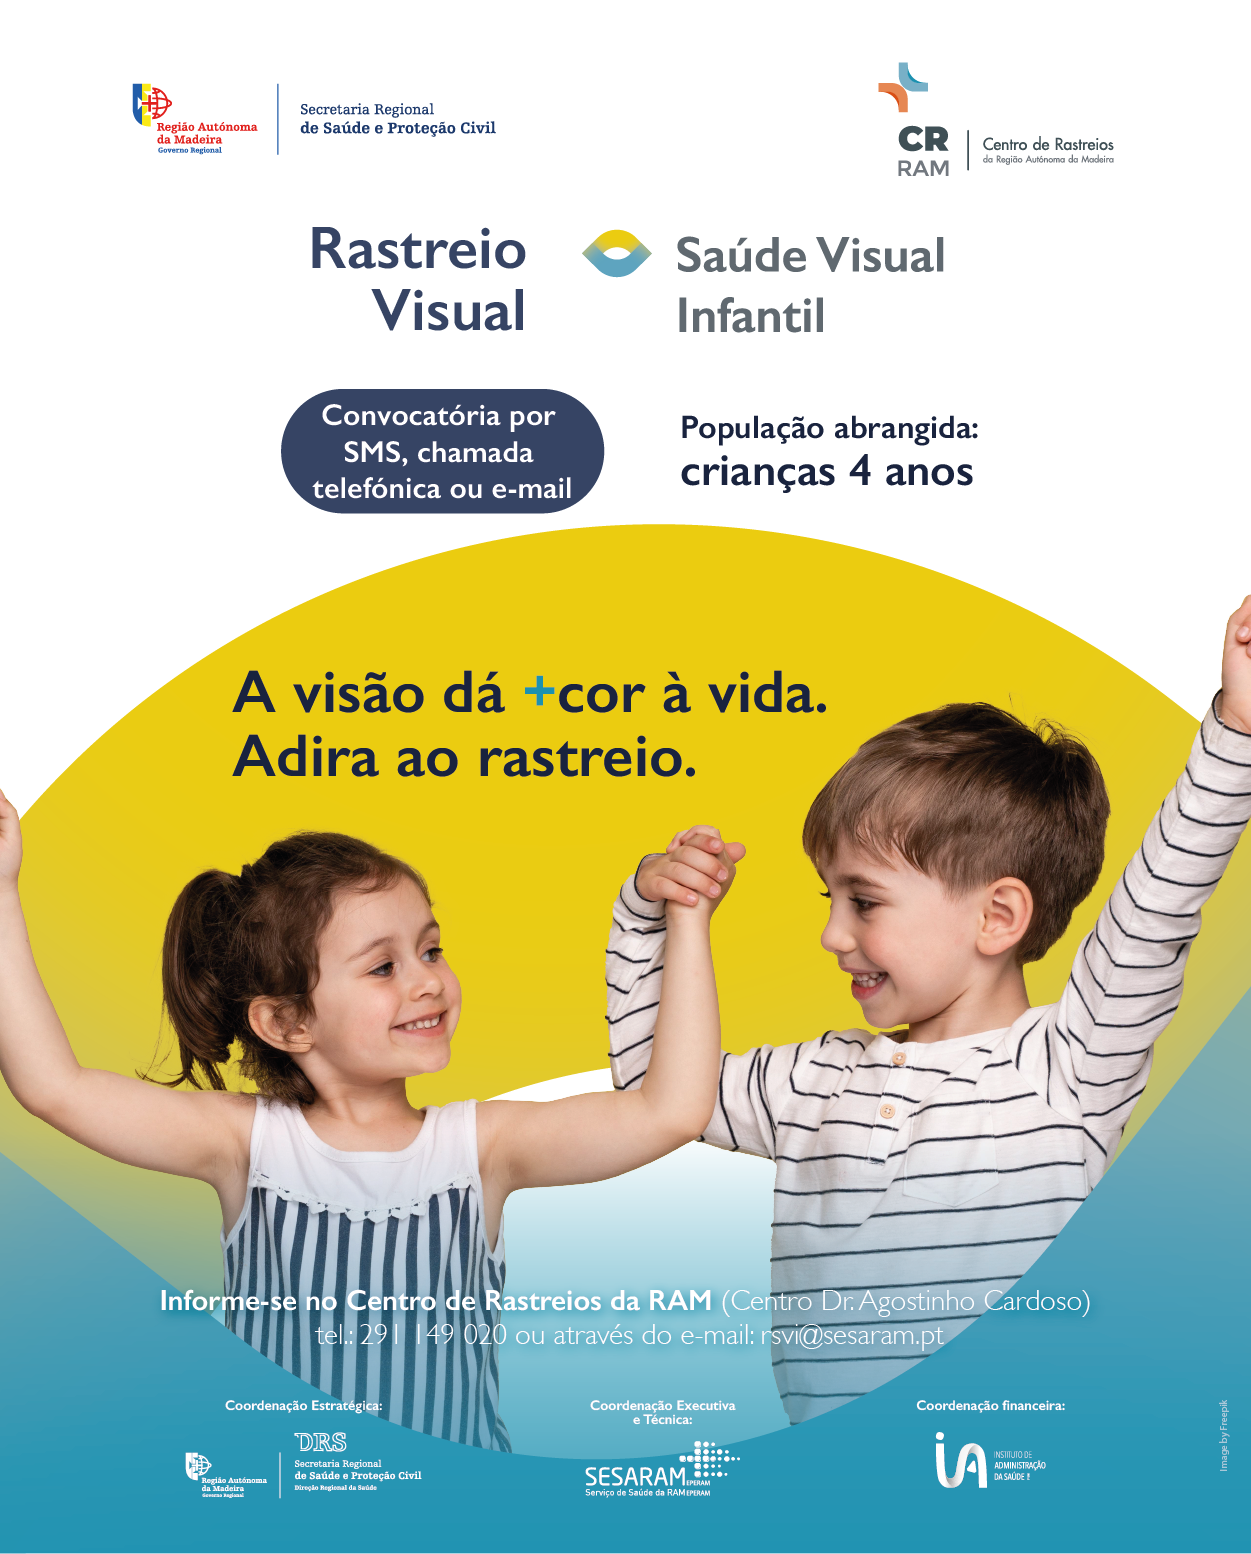 Rastreio Visual Saúde Visual Infantil.